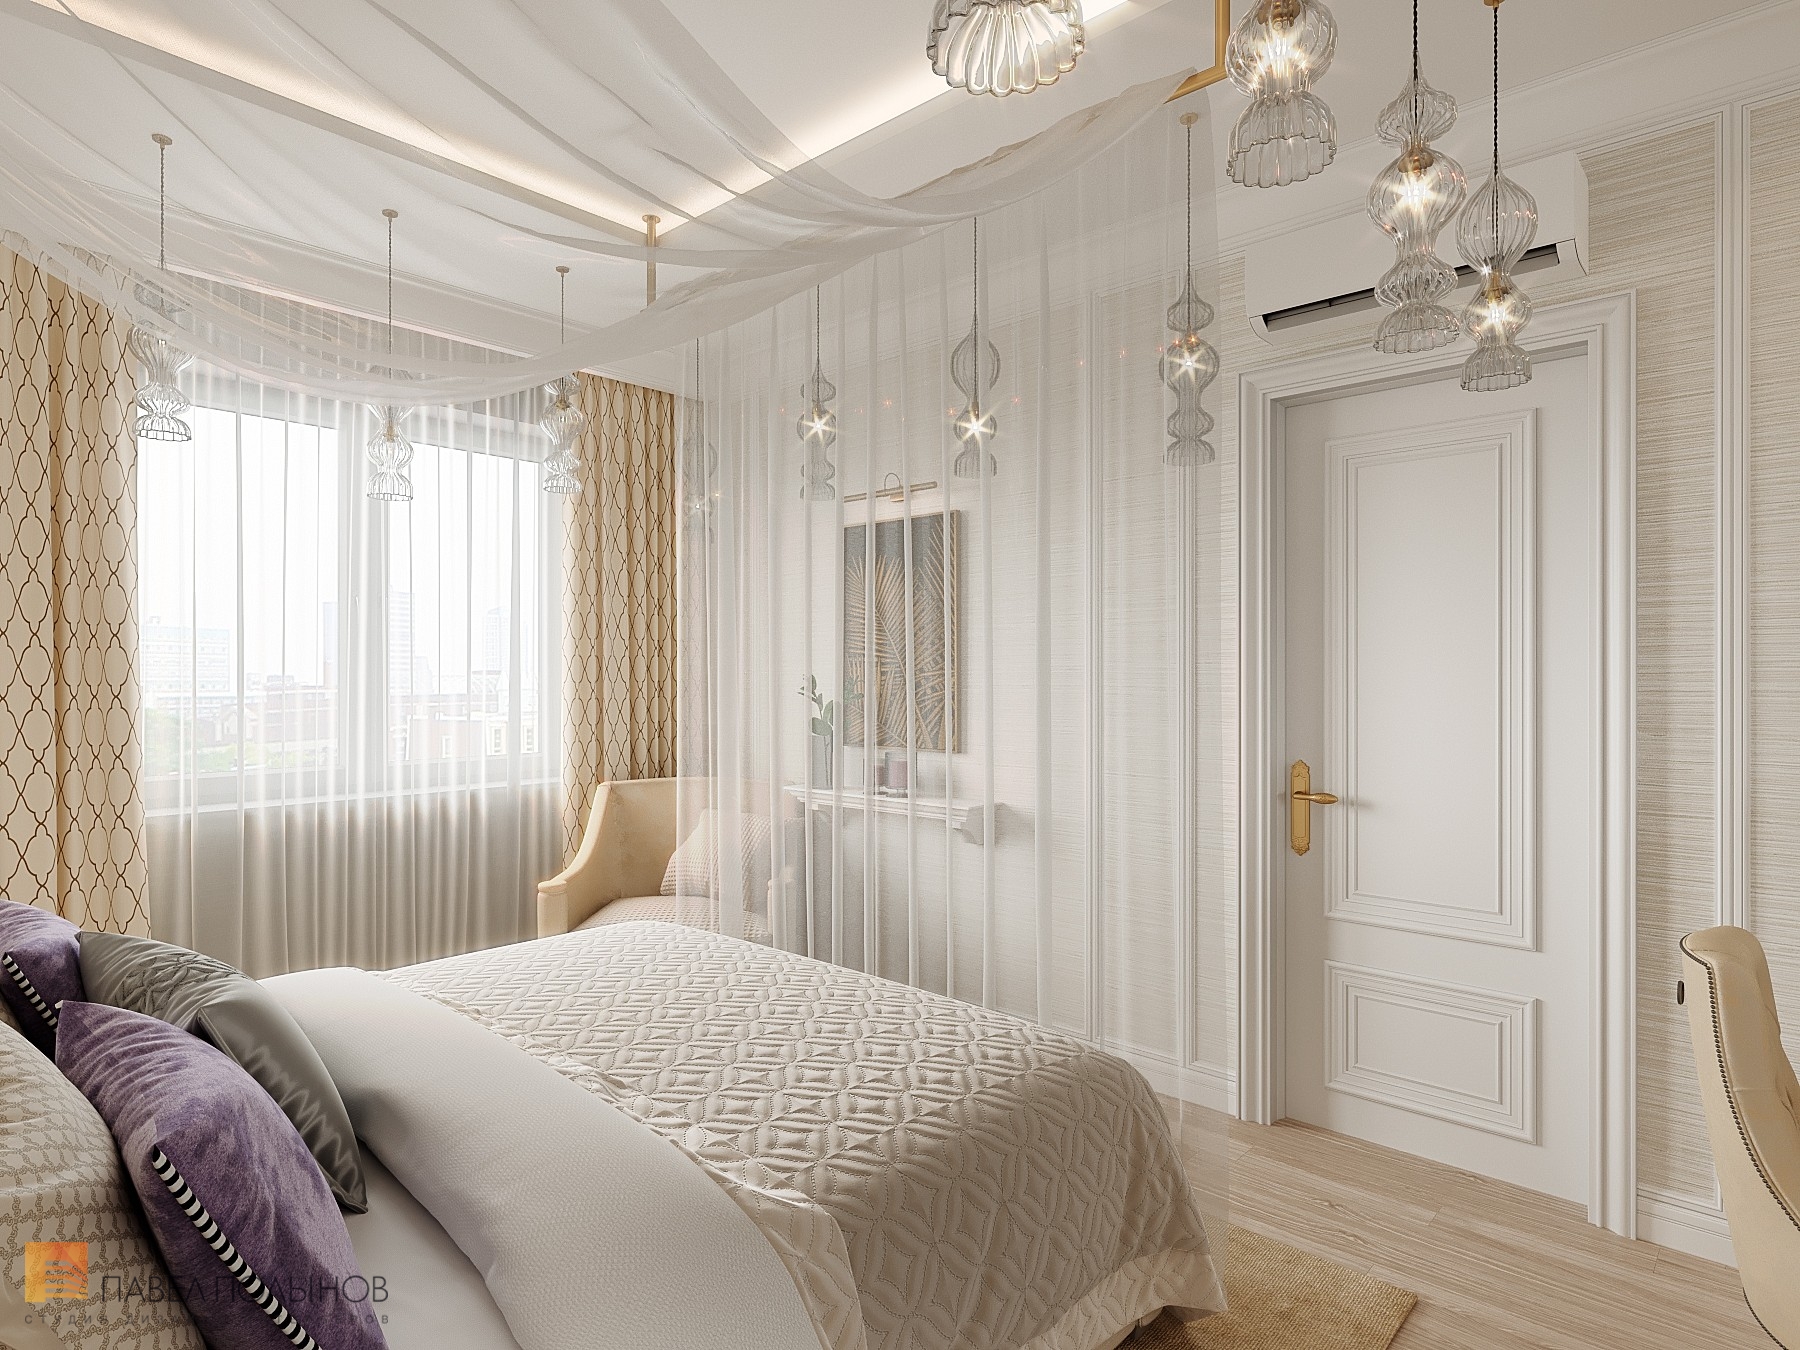 Фото дизайн интерьера спальни из проекта «Дизайн квартиры в ЖК «Три ветра», неоклассика, 88 кв.м.»